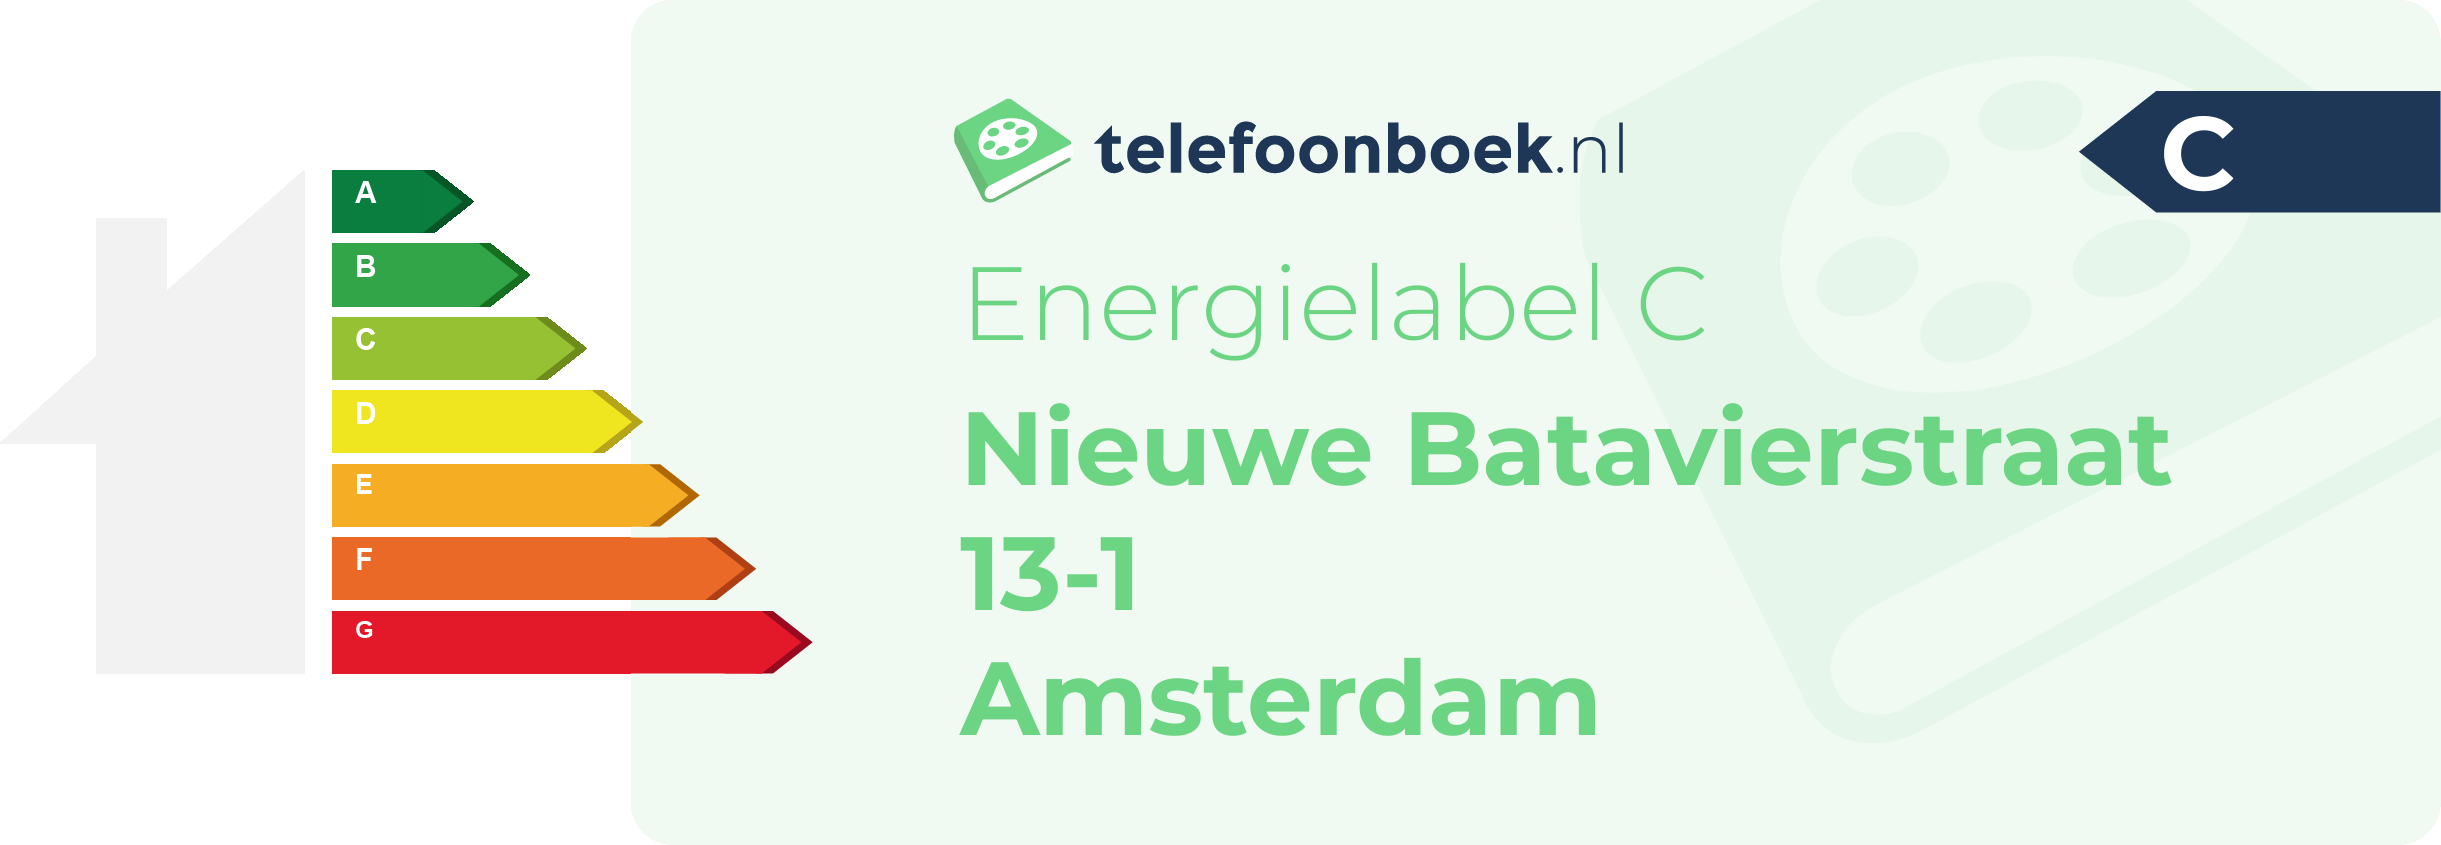 Energielabel Nieuwe Batavierstraat 13-1 Amsterdam